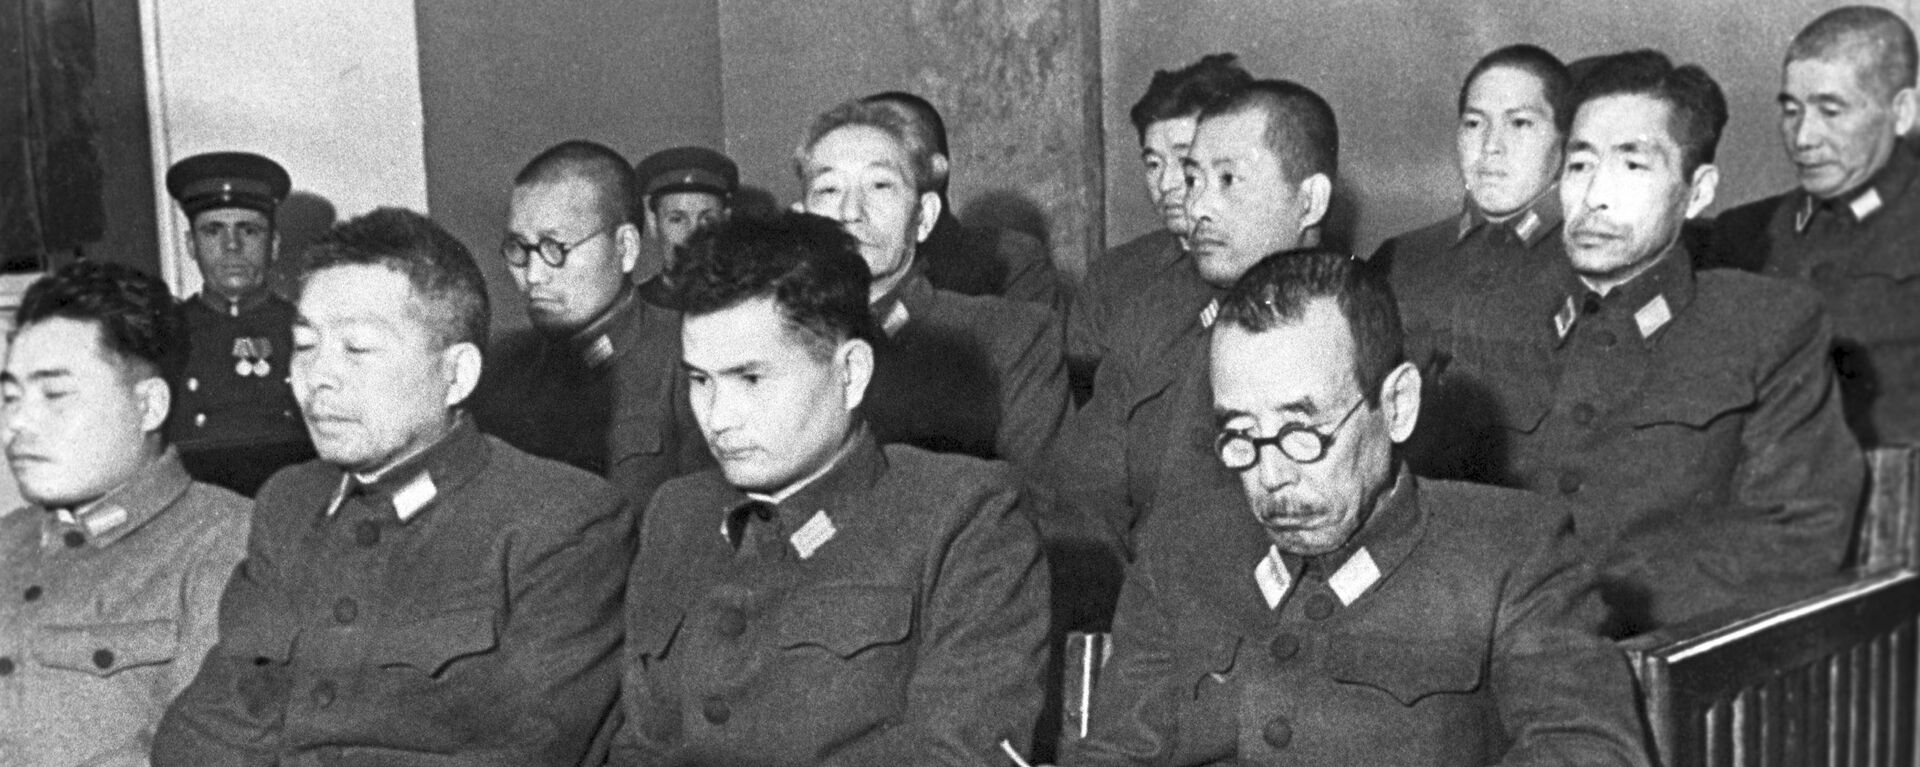 Các bị cáo tại phiên tòa xét xử vụ cựu quân nhân Nhật Bản bị cáo buộc chuẩn bị sử dụng vũ khí vi khuẩn. Khabarovsk, 1949 - Sputnik Việt Nam, 1920, 20.08.2021